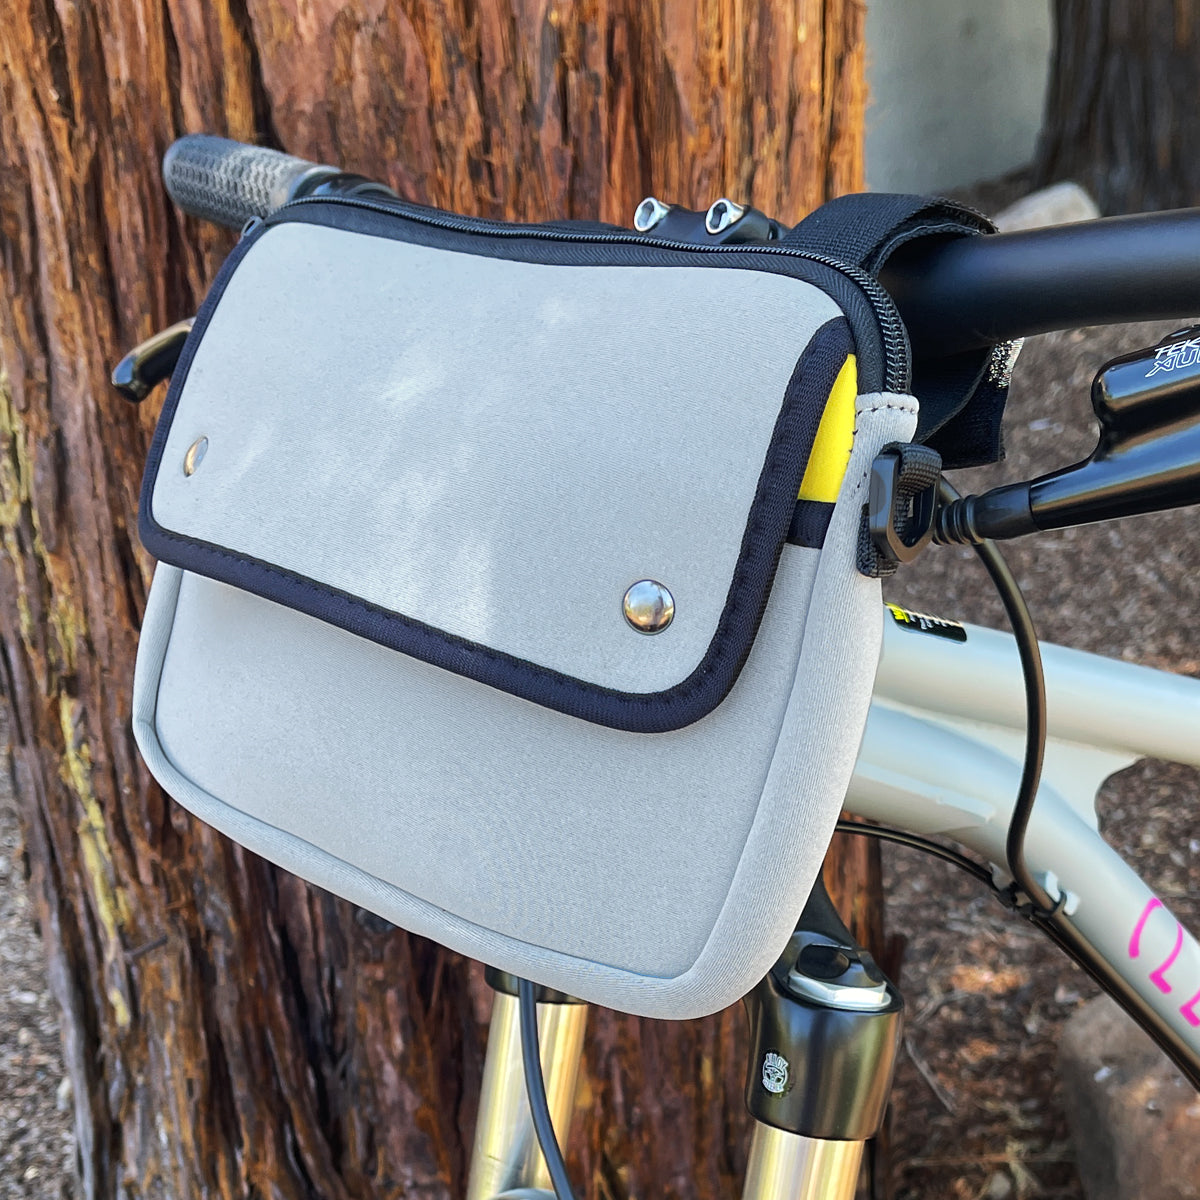 Waterproof Bike Bag, Handlebar Cycling Storage for Too